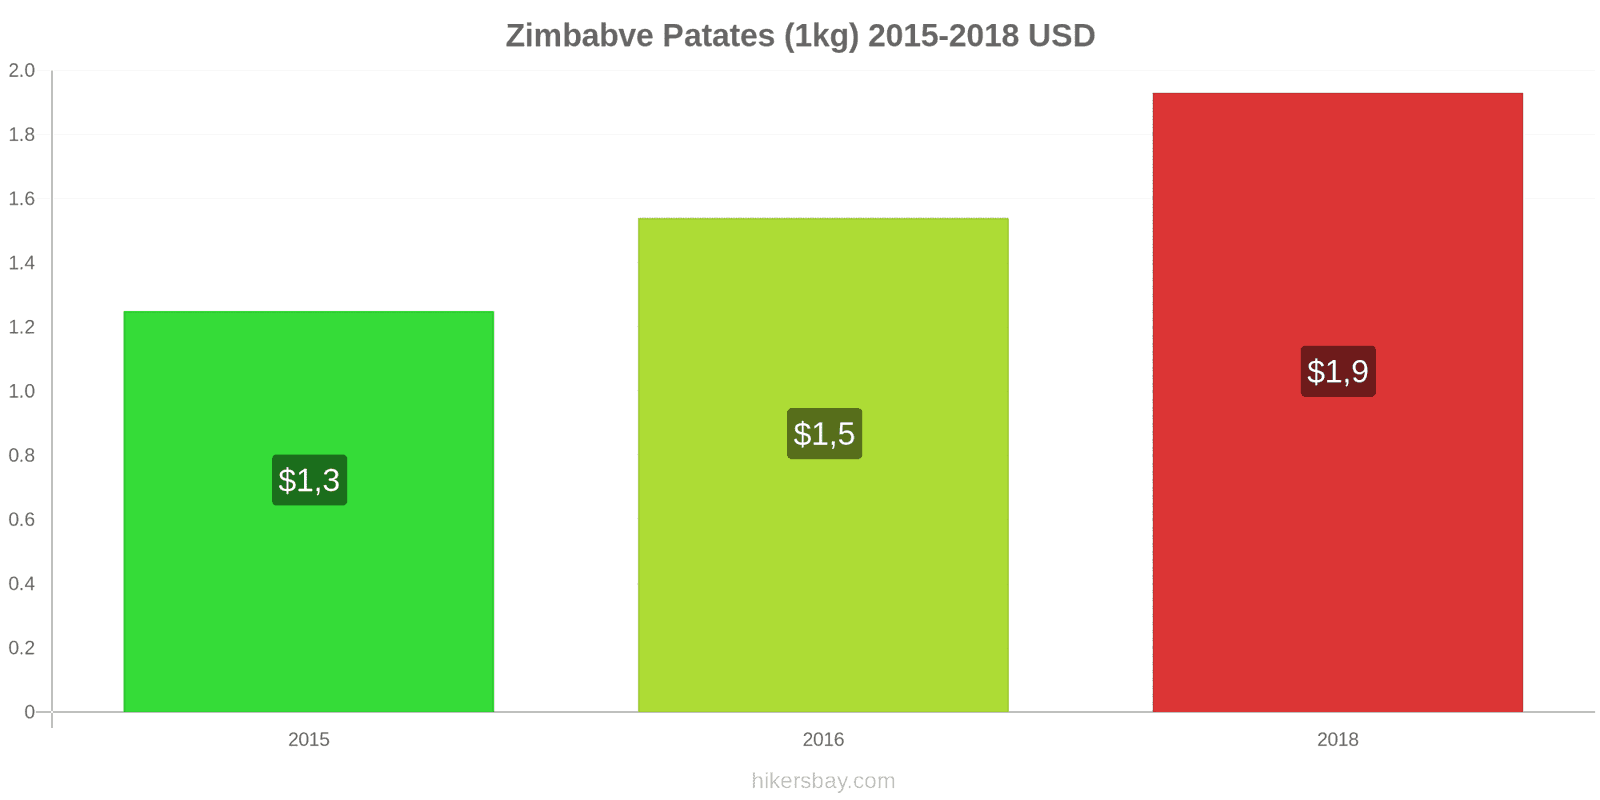 Zimbabve fiyat değişiklikleri Patates (1kg) hikersbay.com